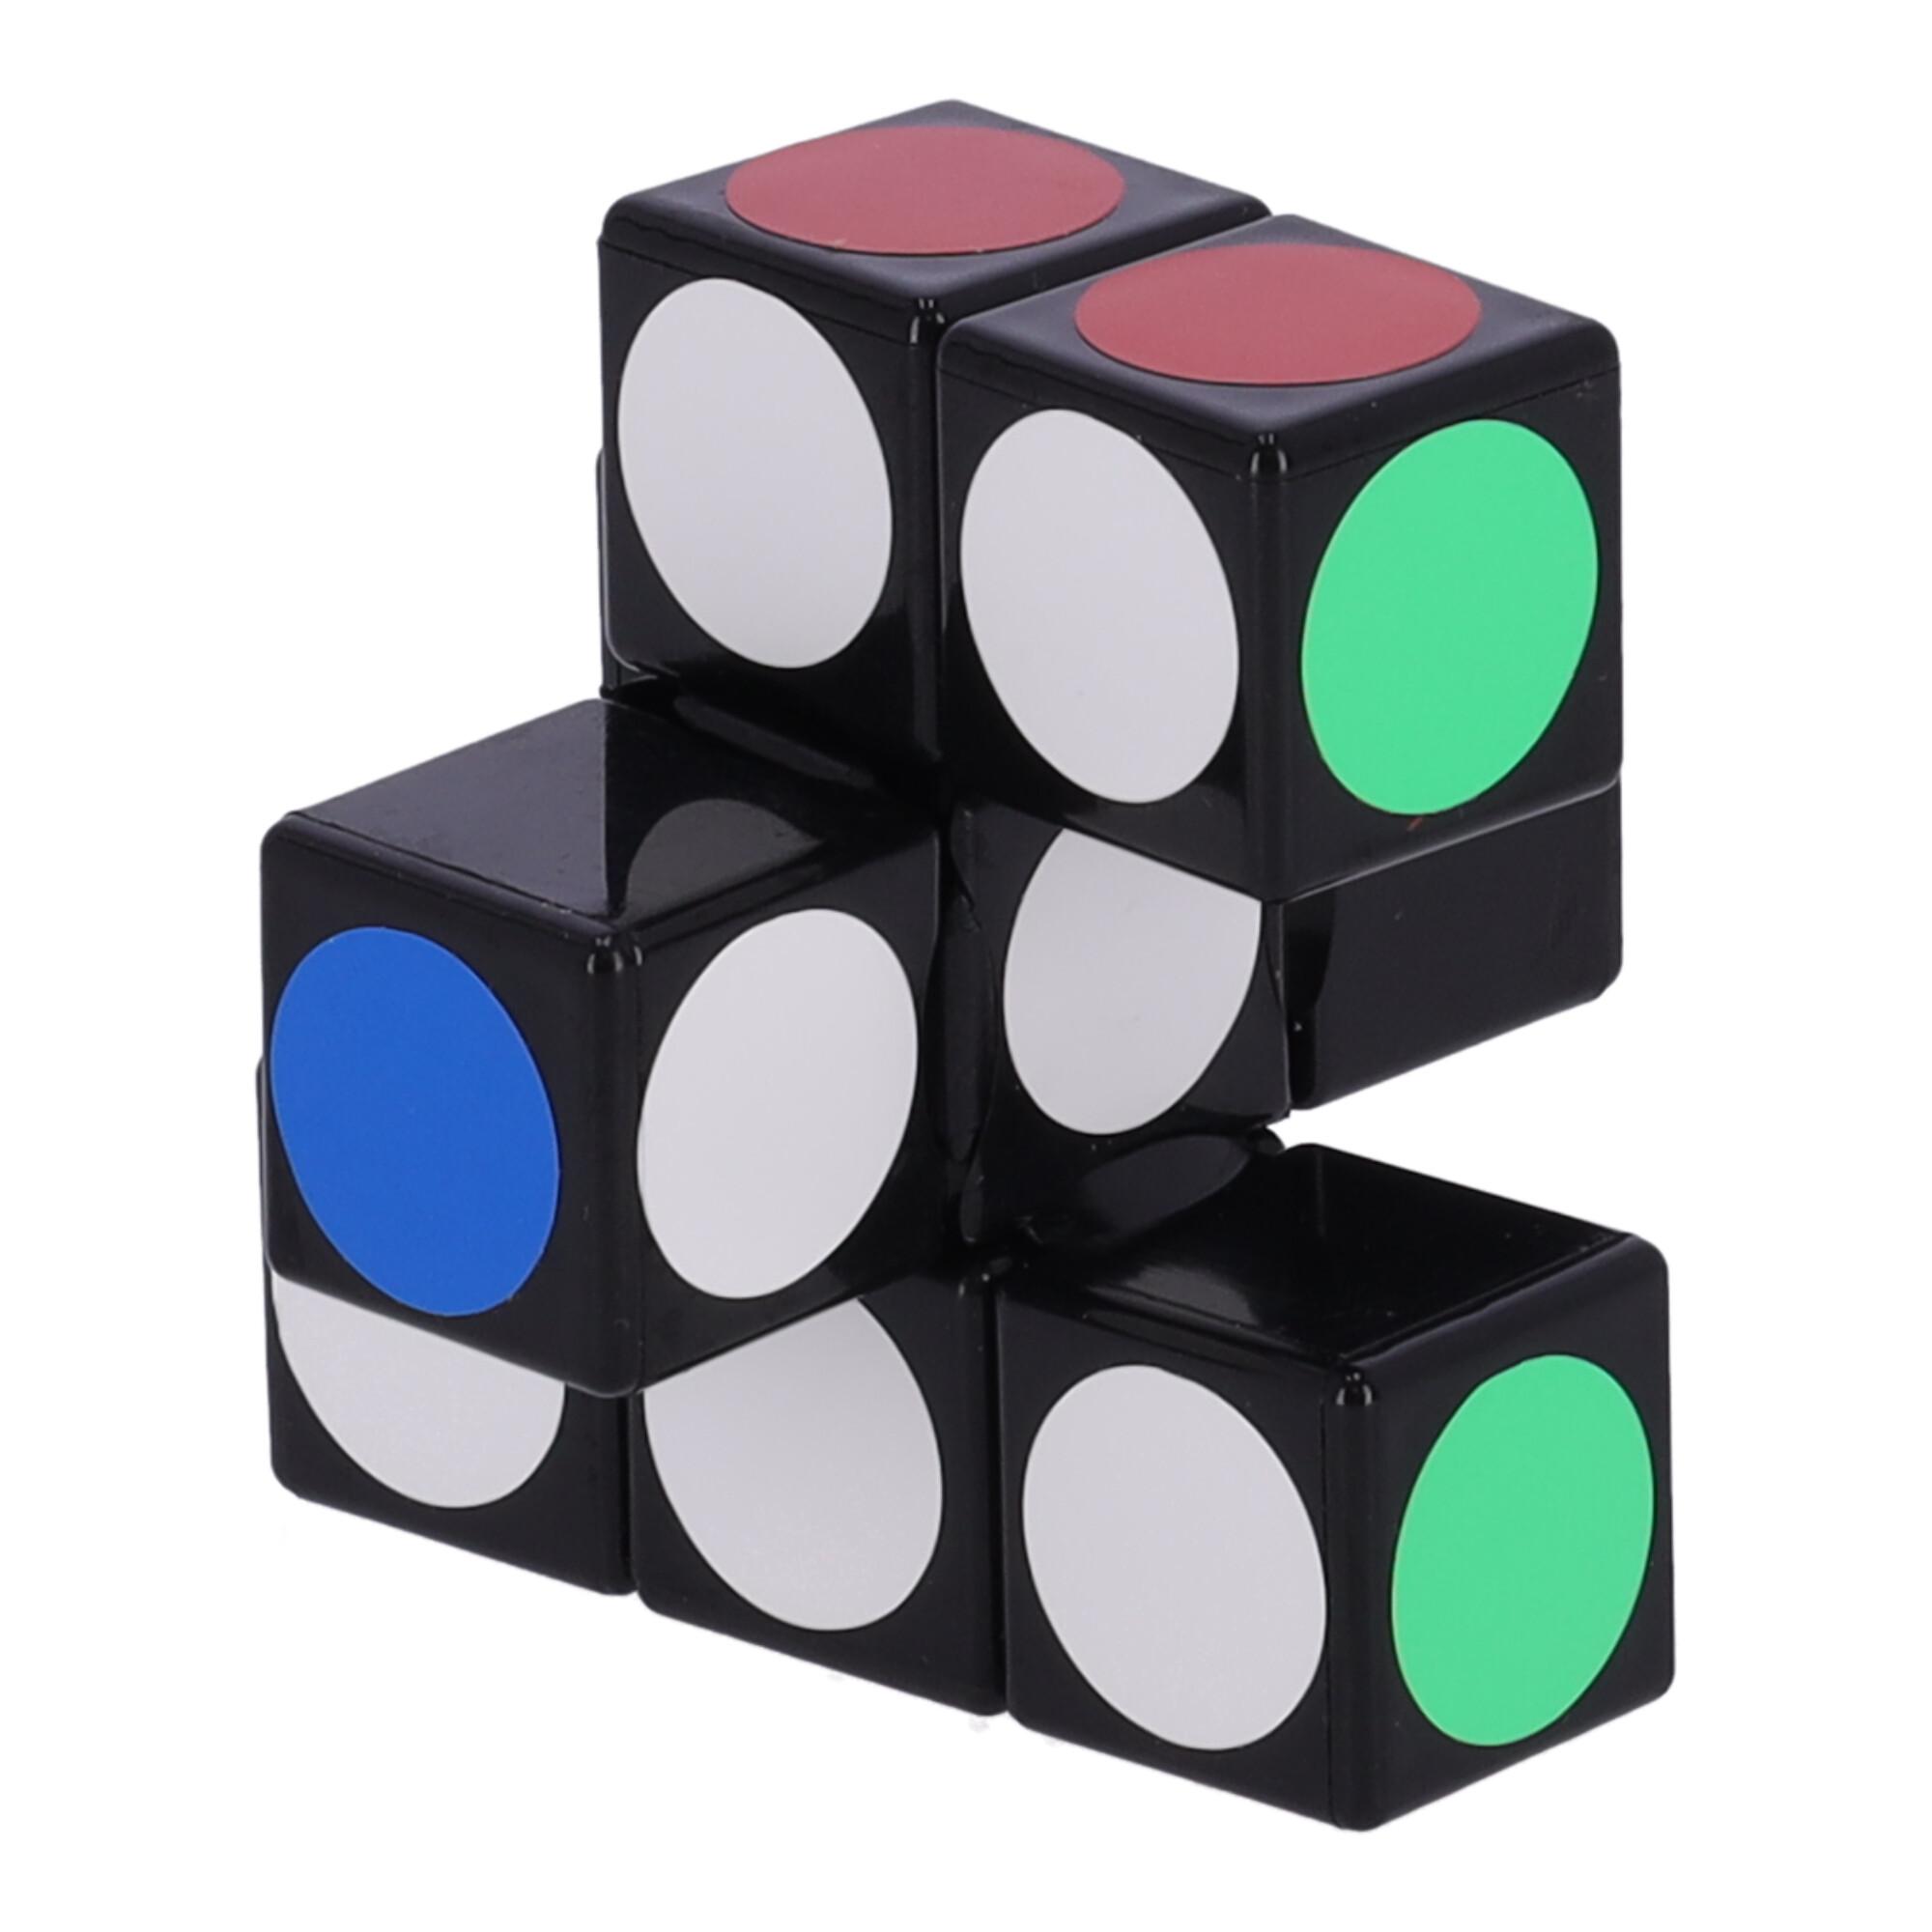 Nowoczesna układanka, kostka logiczna, Kostka Rubika - 1x3x3